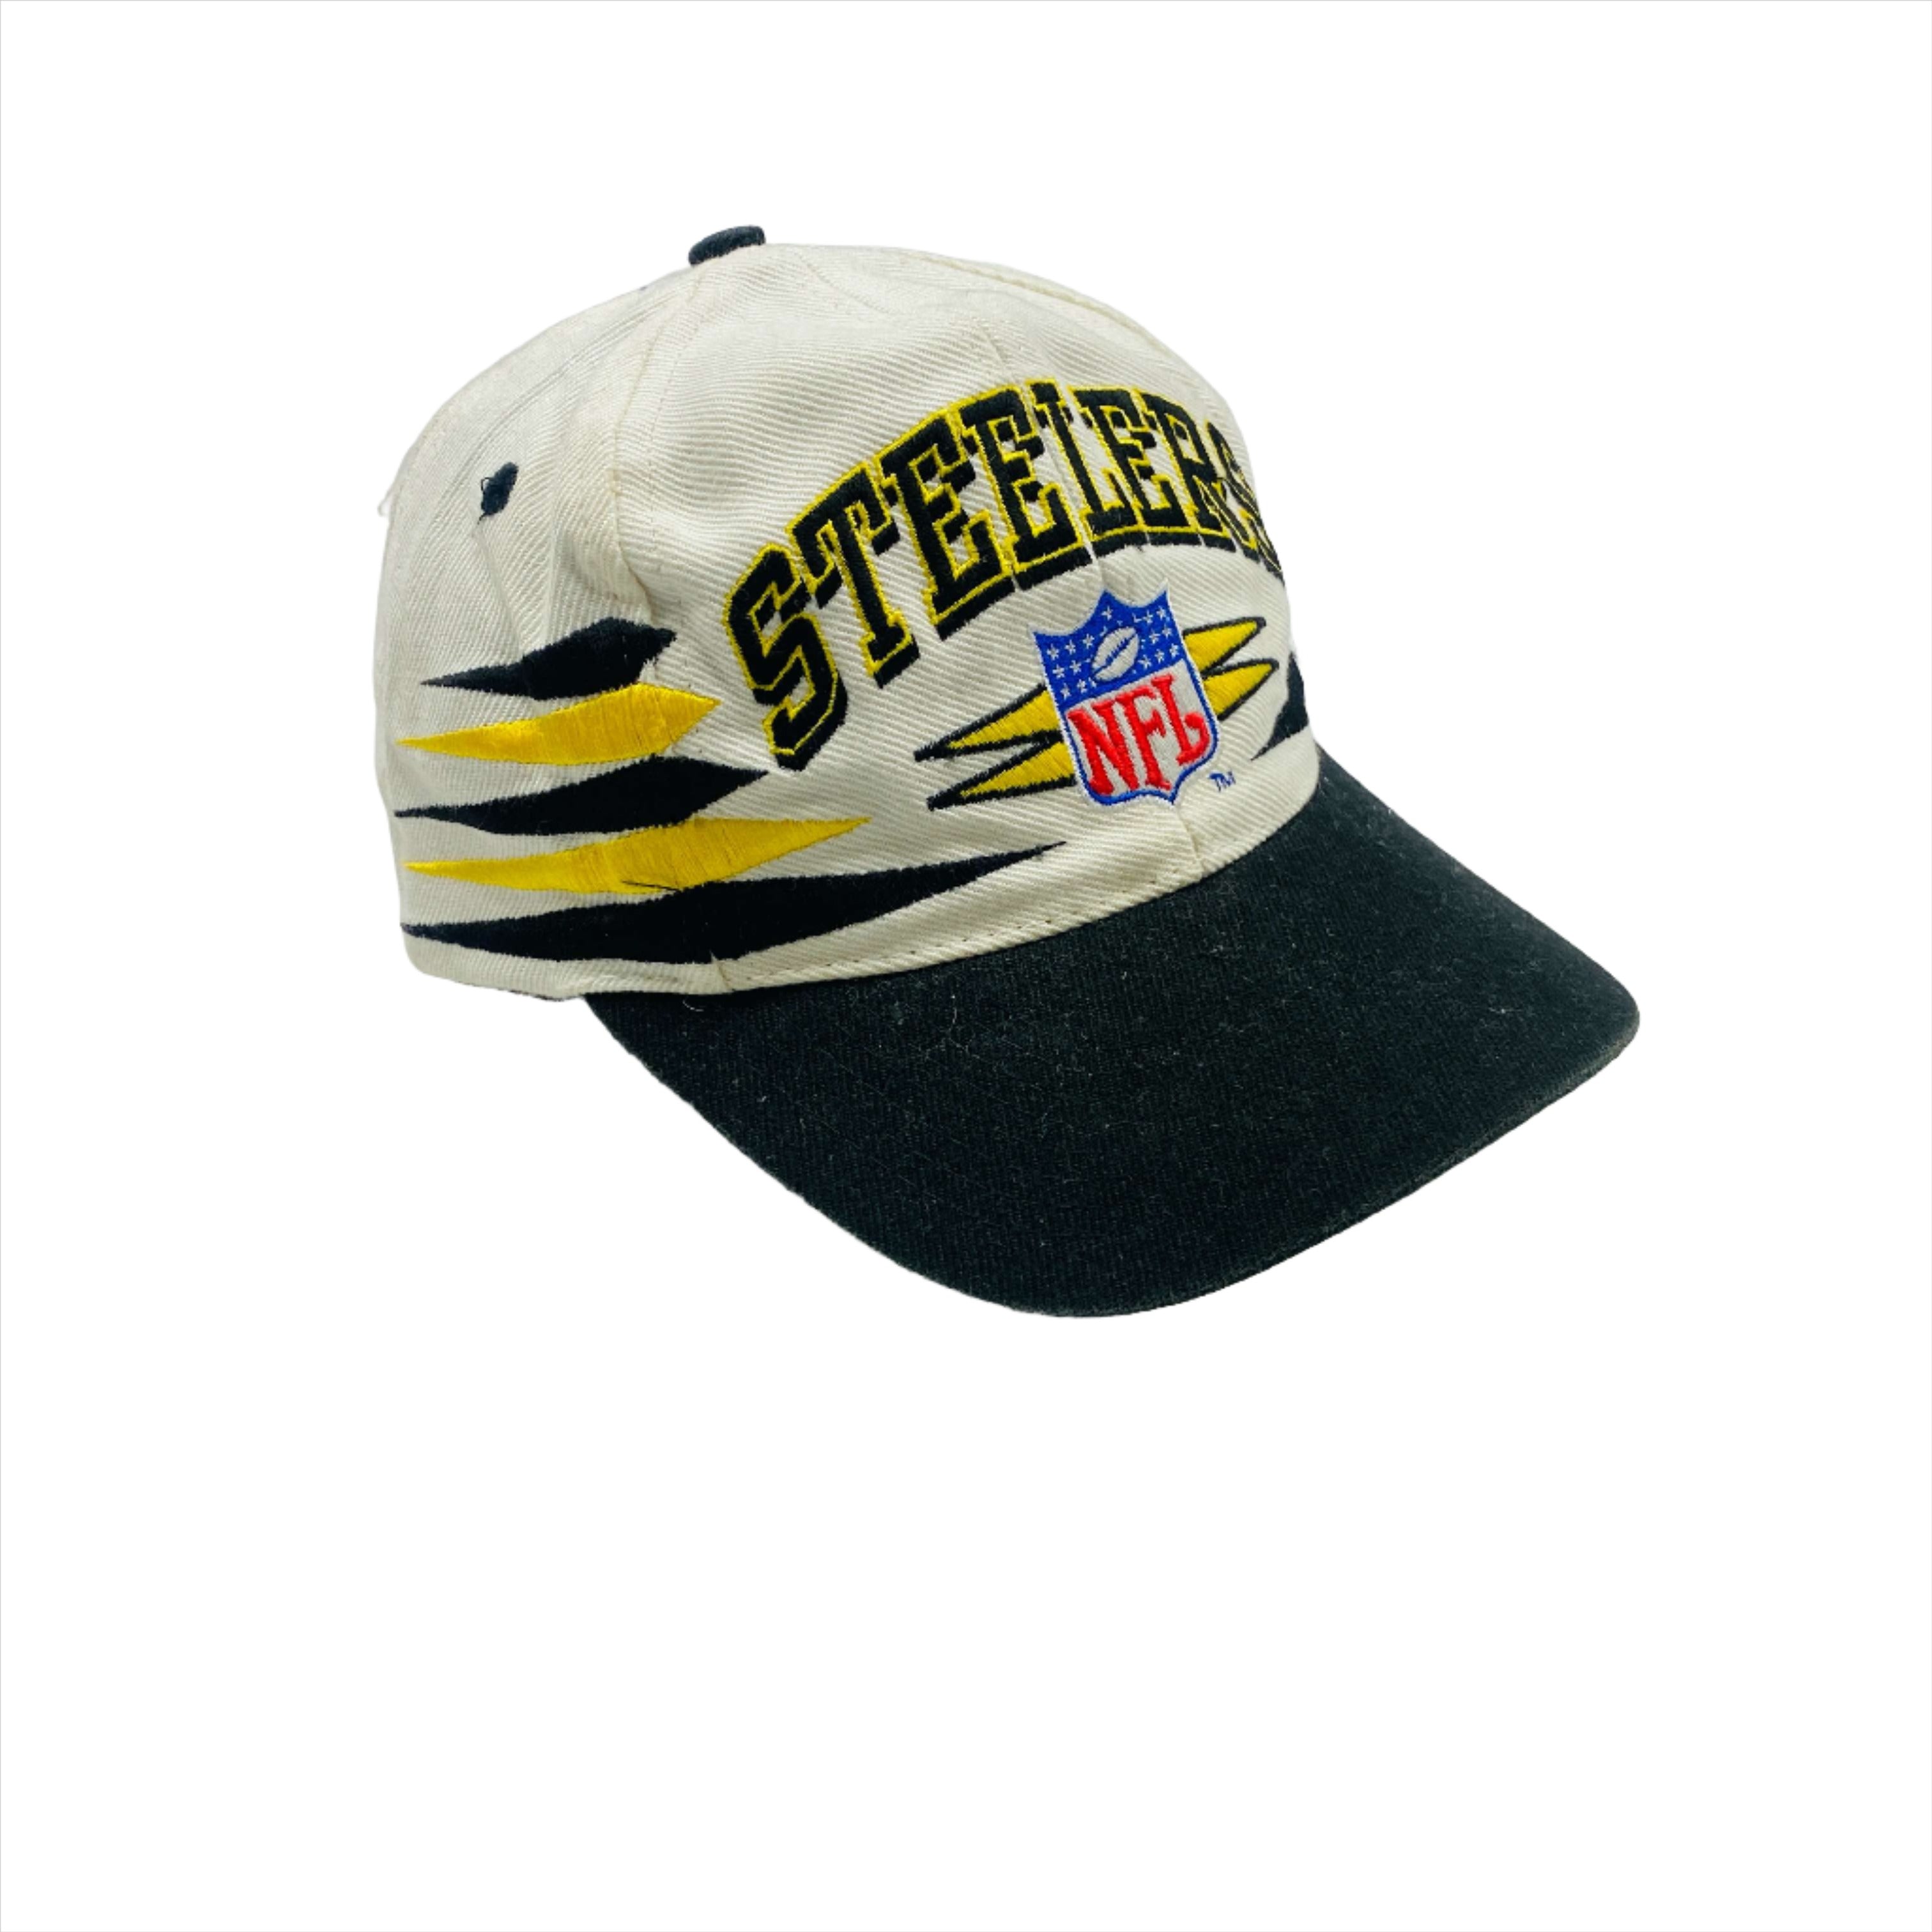 Pittsburgh Steelers NFL Snapback Cap